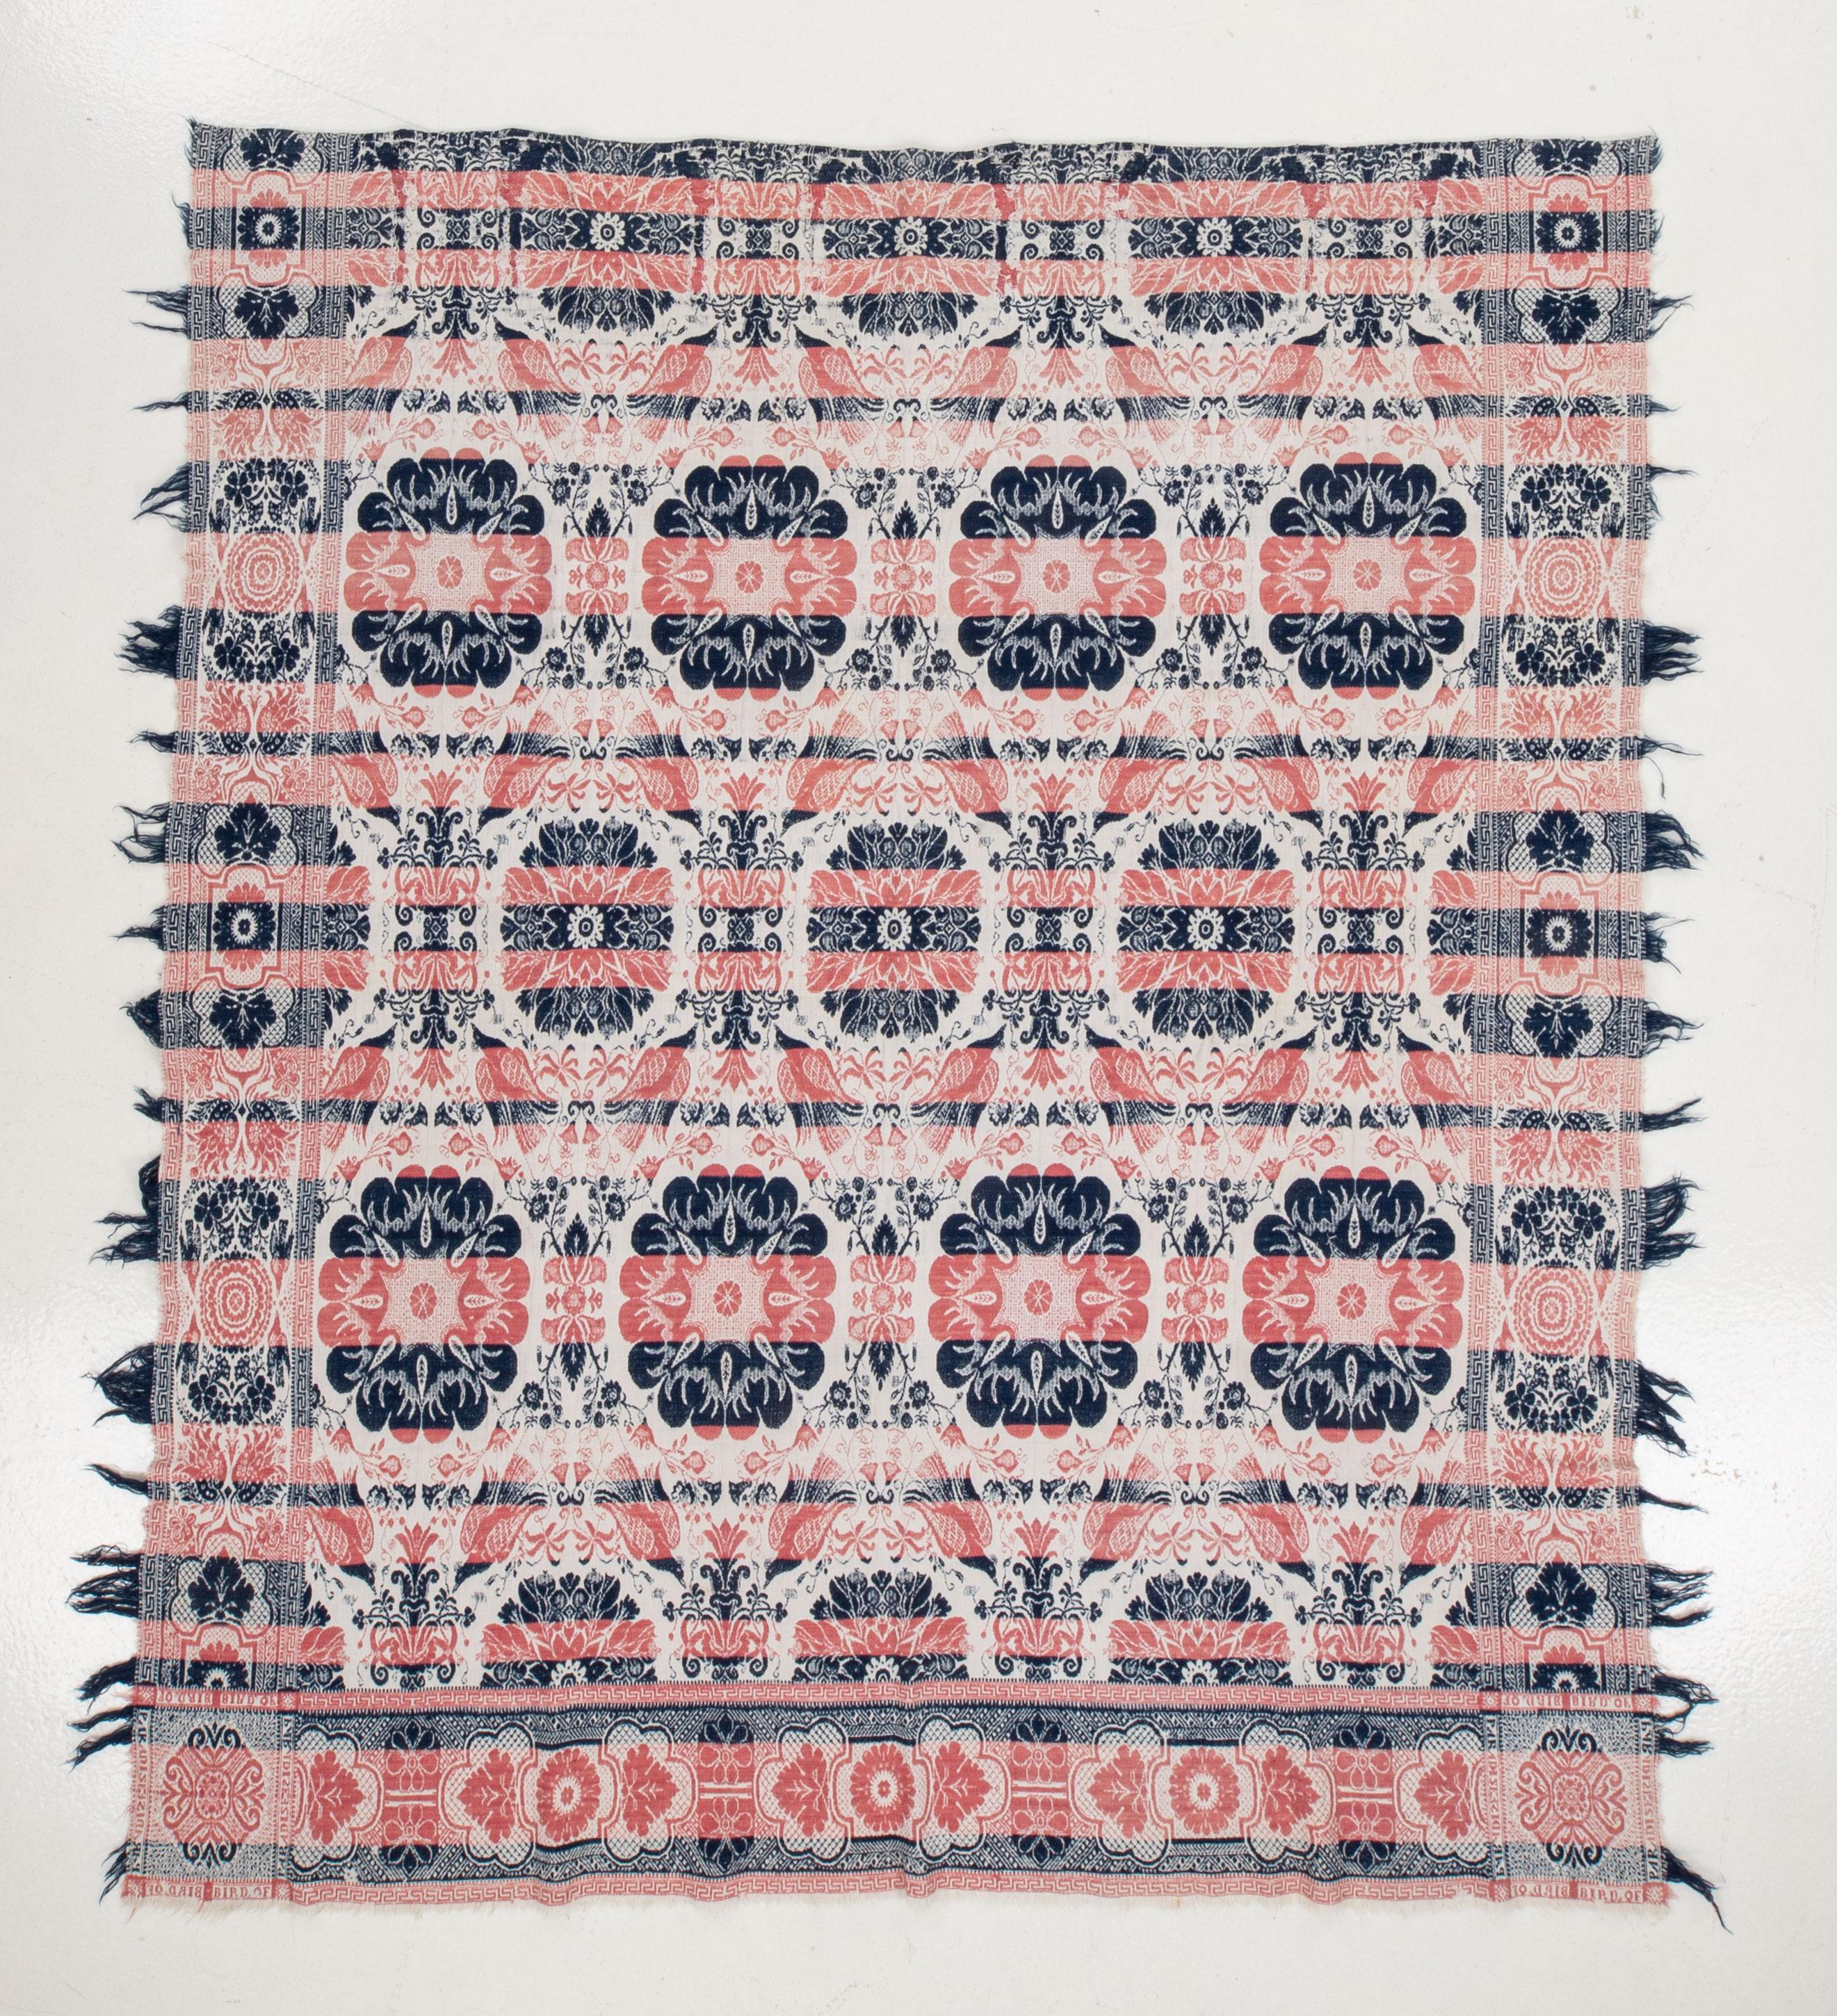 Amerikanische Decke mit alters- und gebrauchsbedingten Abnutzungserscheinungen, mit Paradiesvogel-Muster.
Amerikanische Bettdecken sind gewebte Bettbezüge, die in den Vereinigten Staaten eine lange Geschichte haben. Sie waren vom späten 18. bis zum